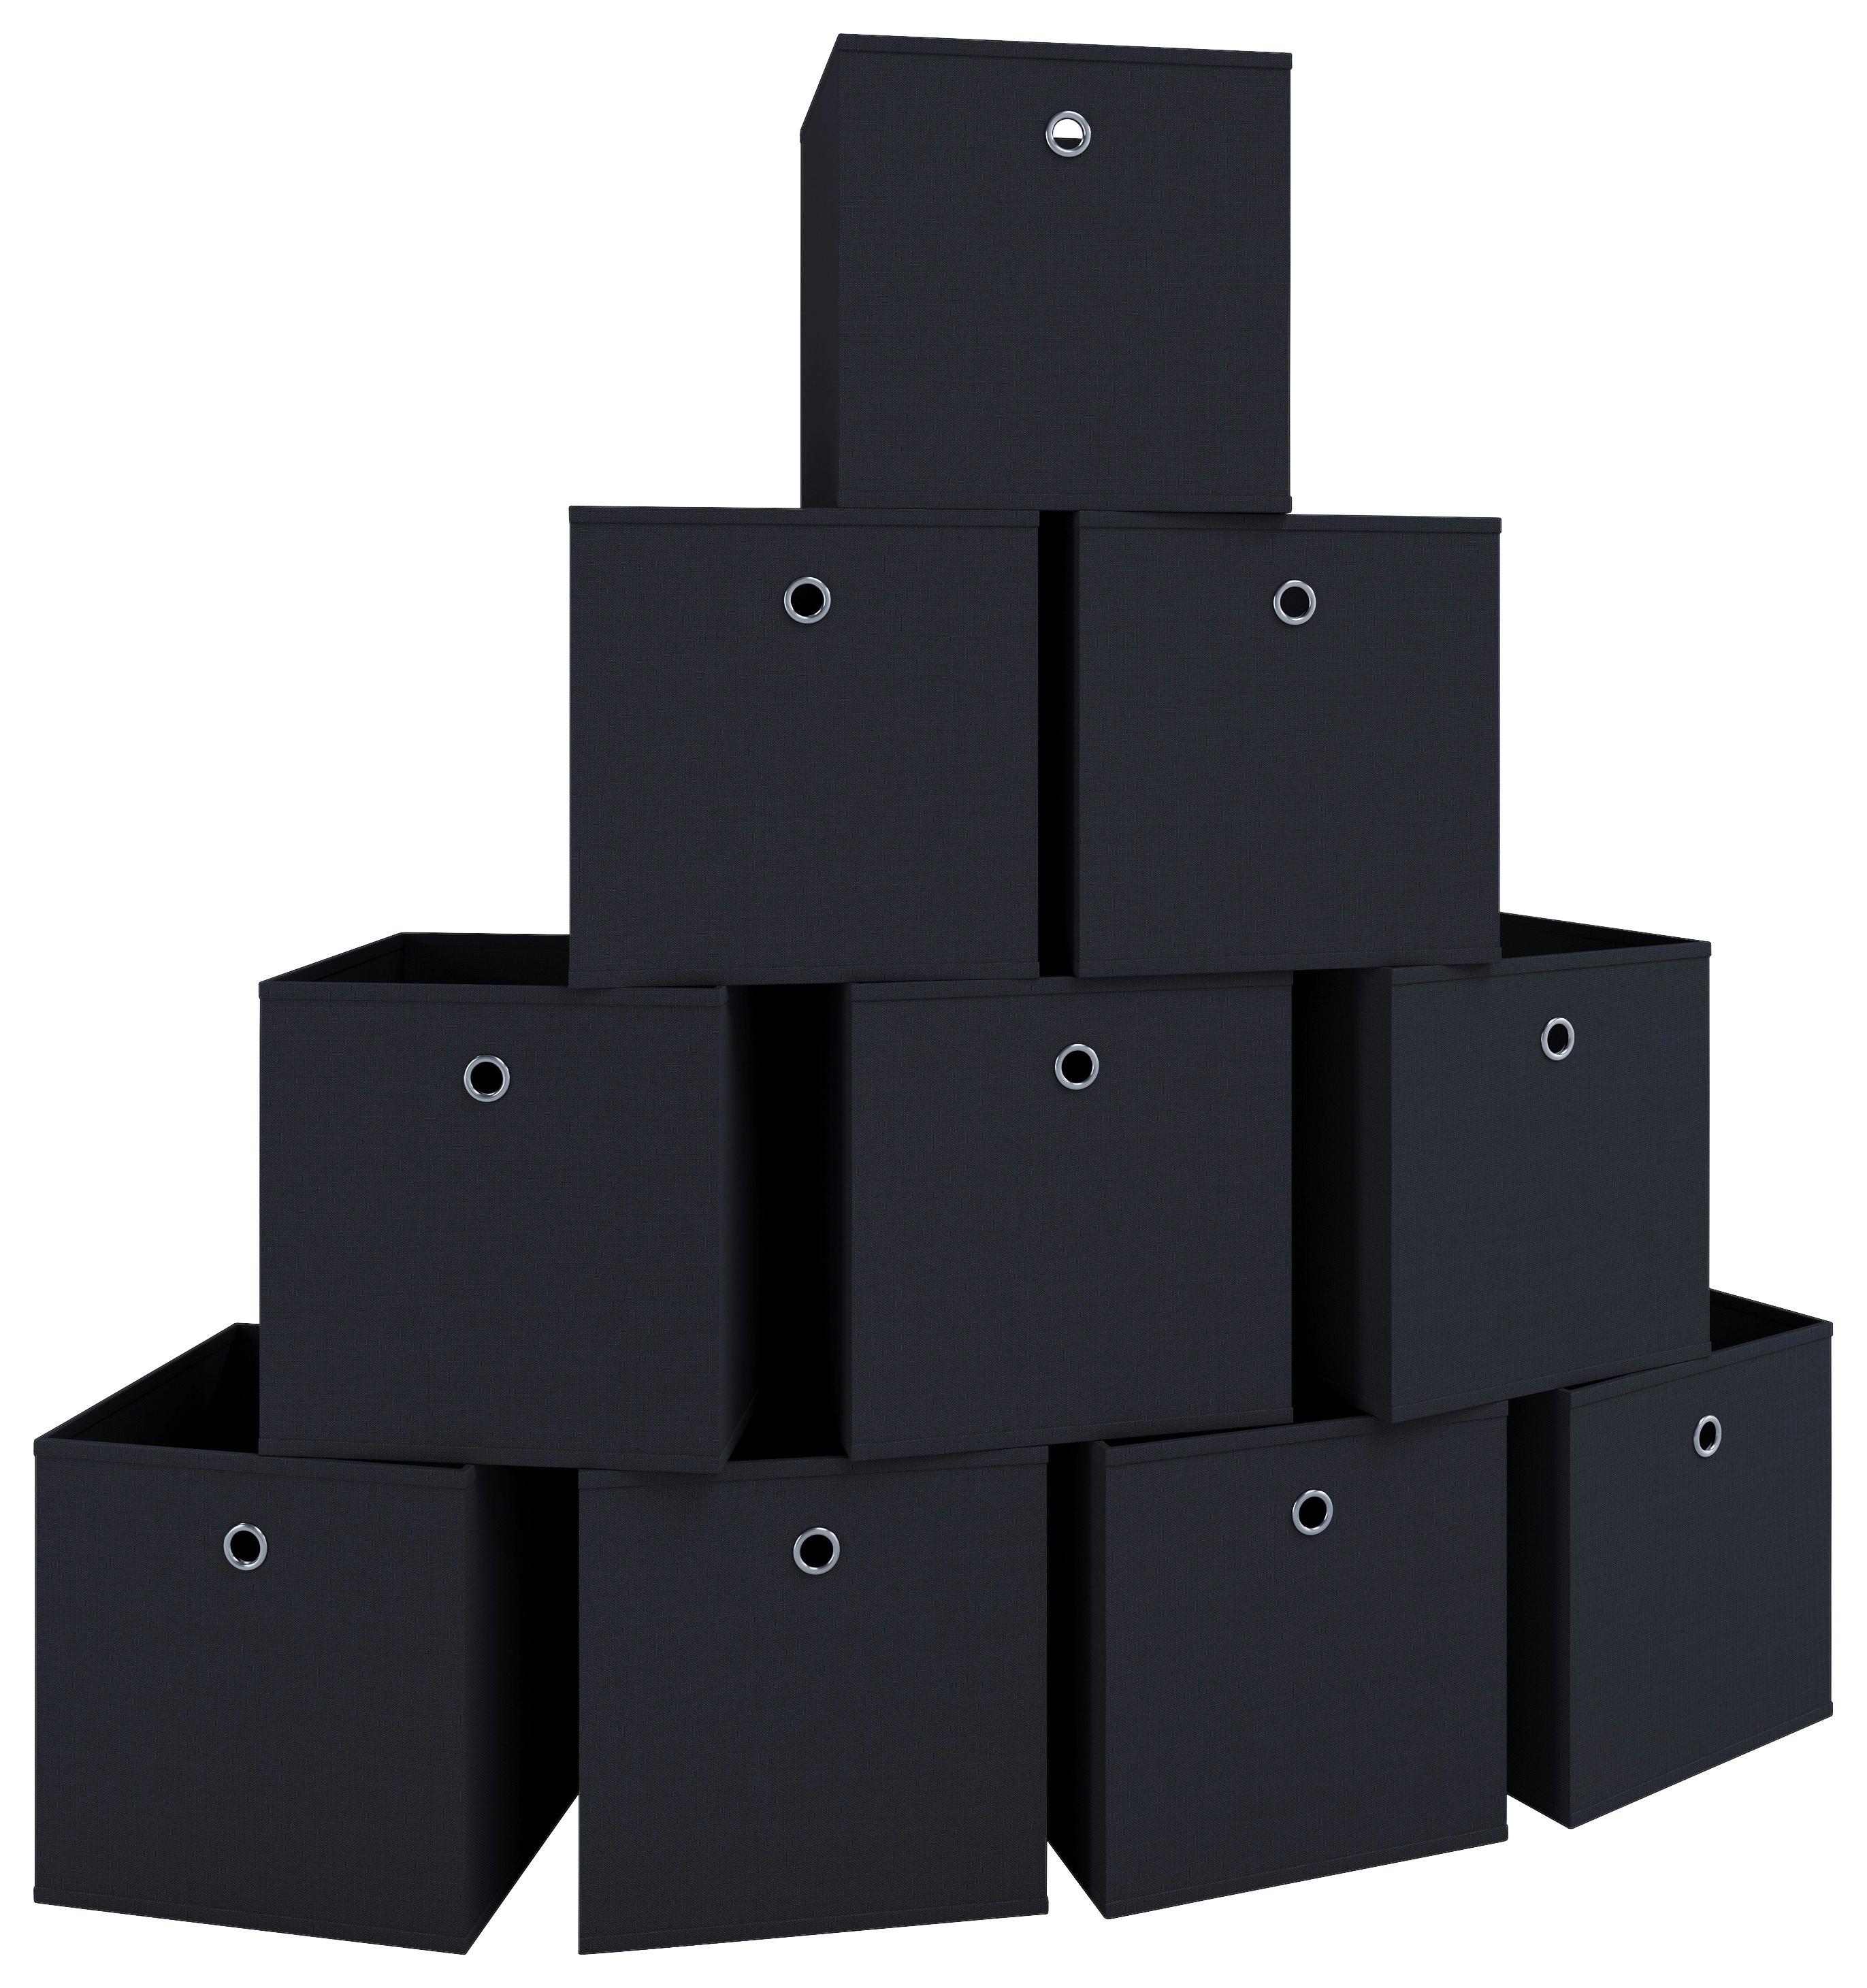 Faltboxen mit Kreis-Ausstanzung, geklebt, 11,5cm x 11,5cm x 11,5cm